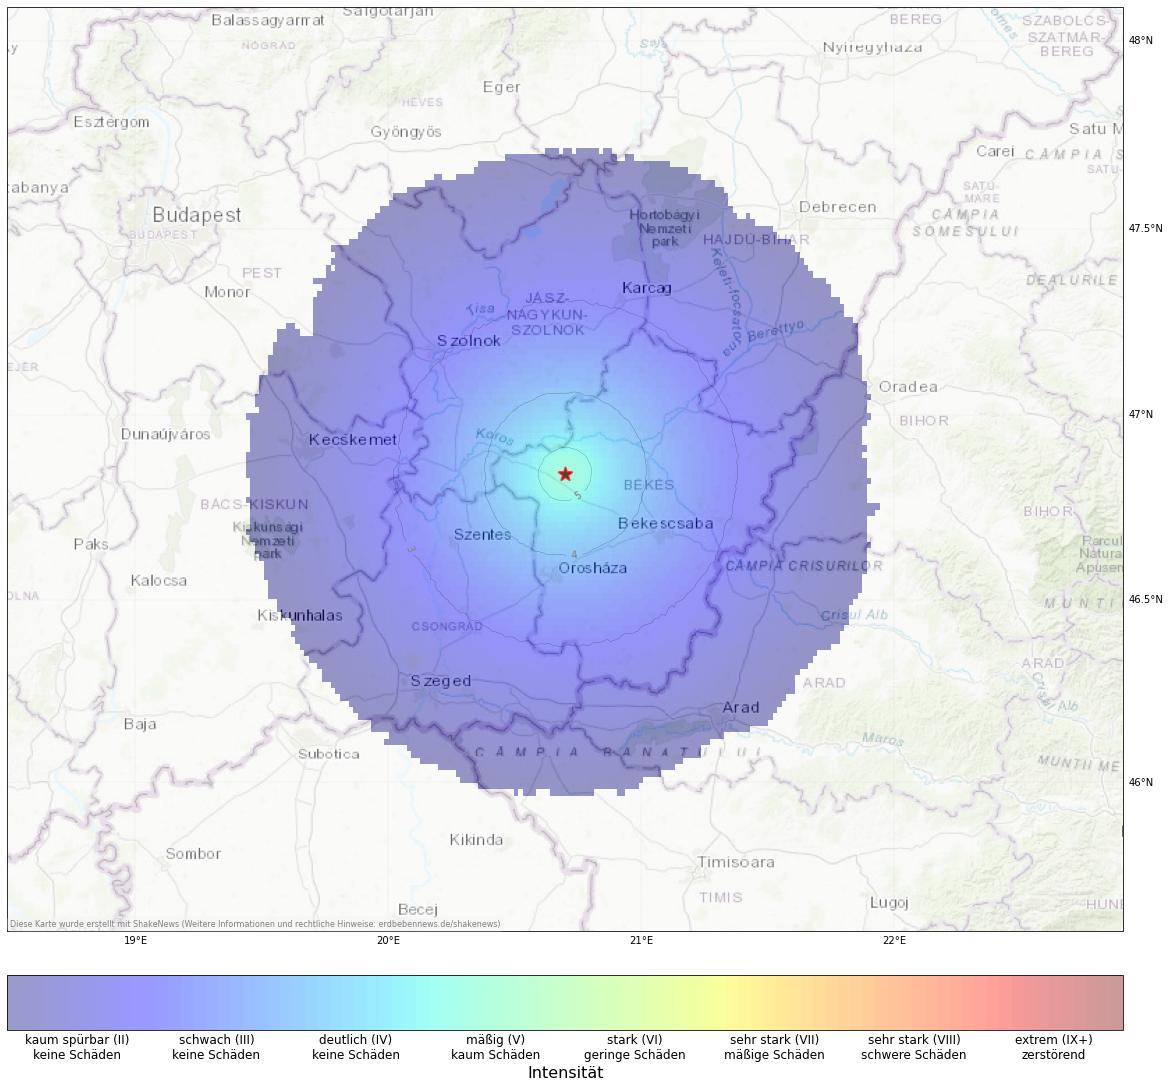 Berechnete Intensität (ShakeMap) des Erdbebens der Stärke 4.0 am 19. August, 11:13 Uhr in Ungarn